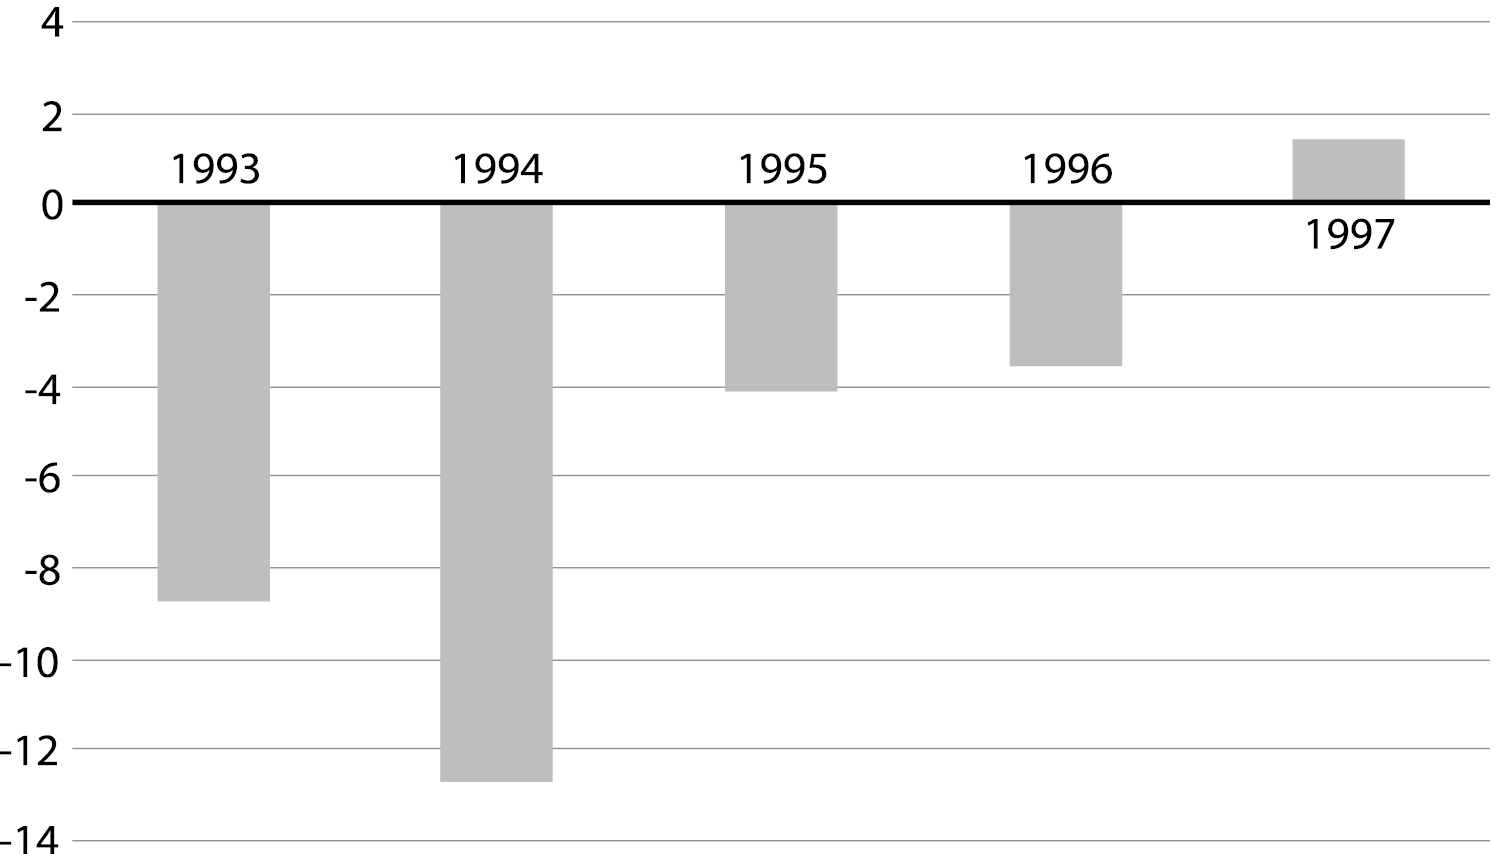 Темпы экономического роста/спада в России в 1993 - 1997 годах